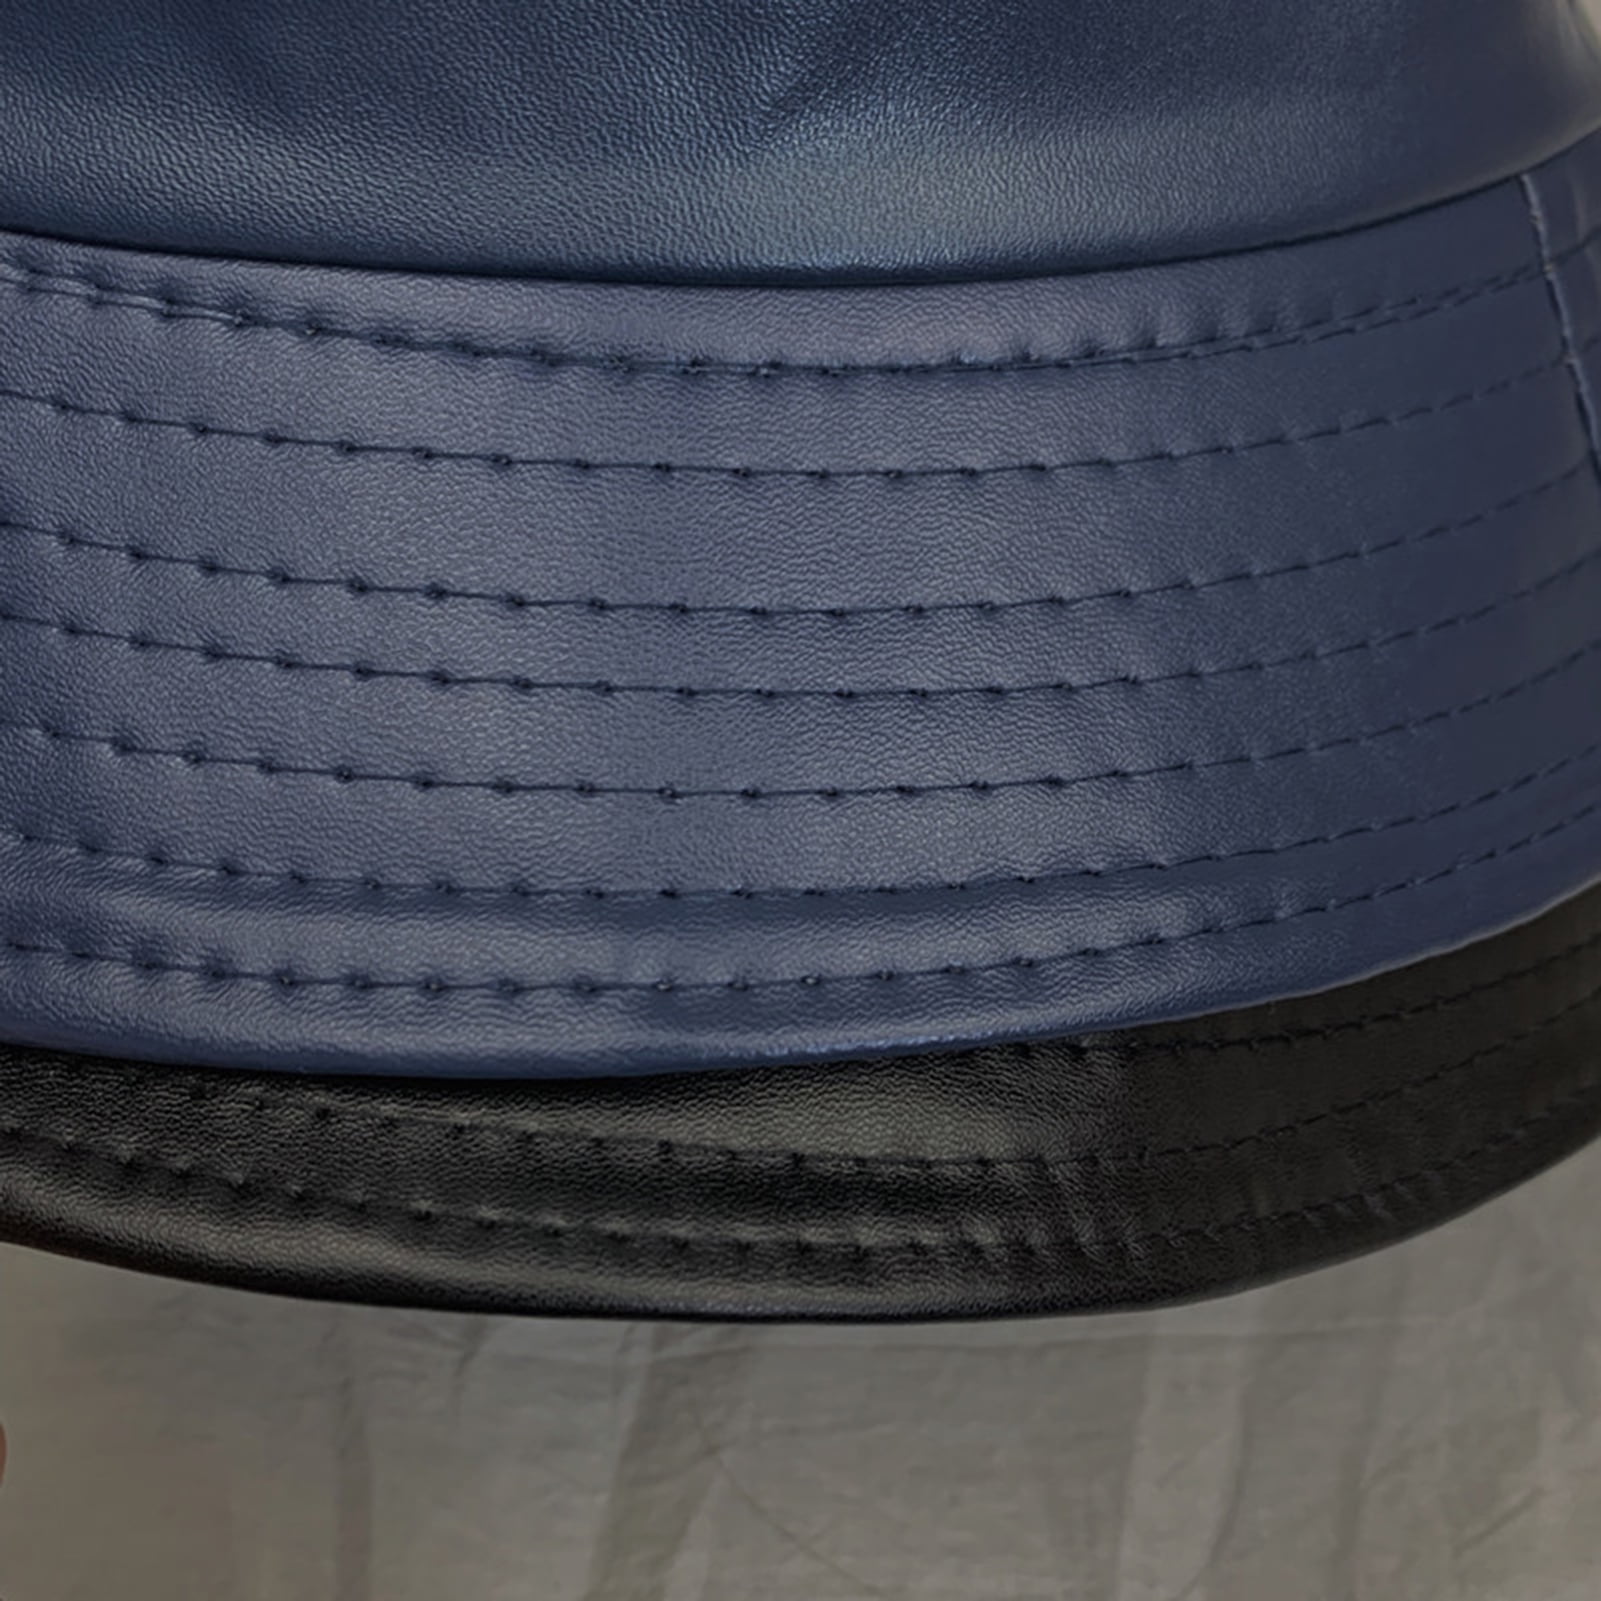 MNG Rain Bucket Hat S00 - Accessories M7013L